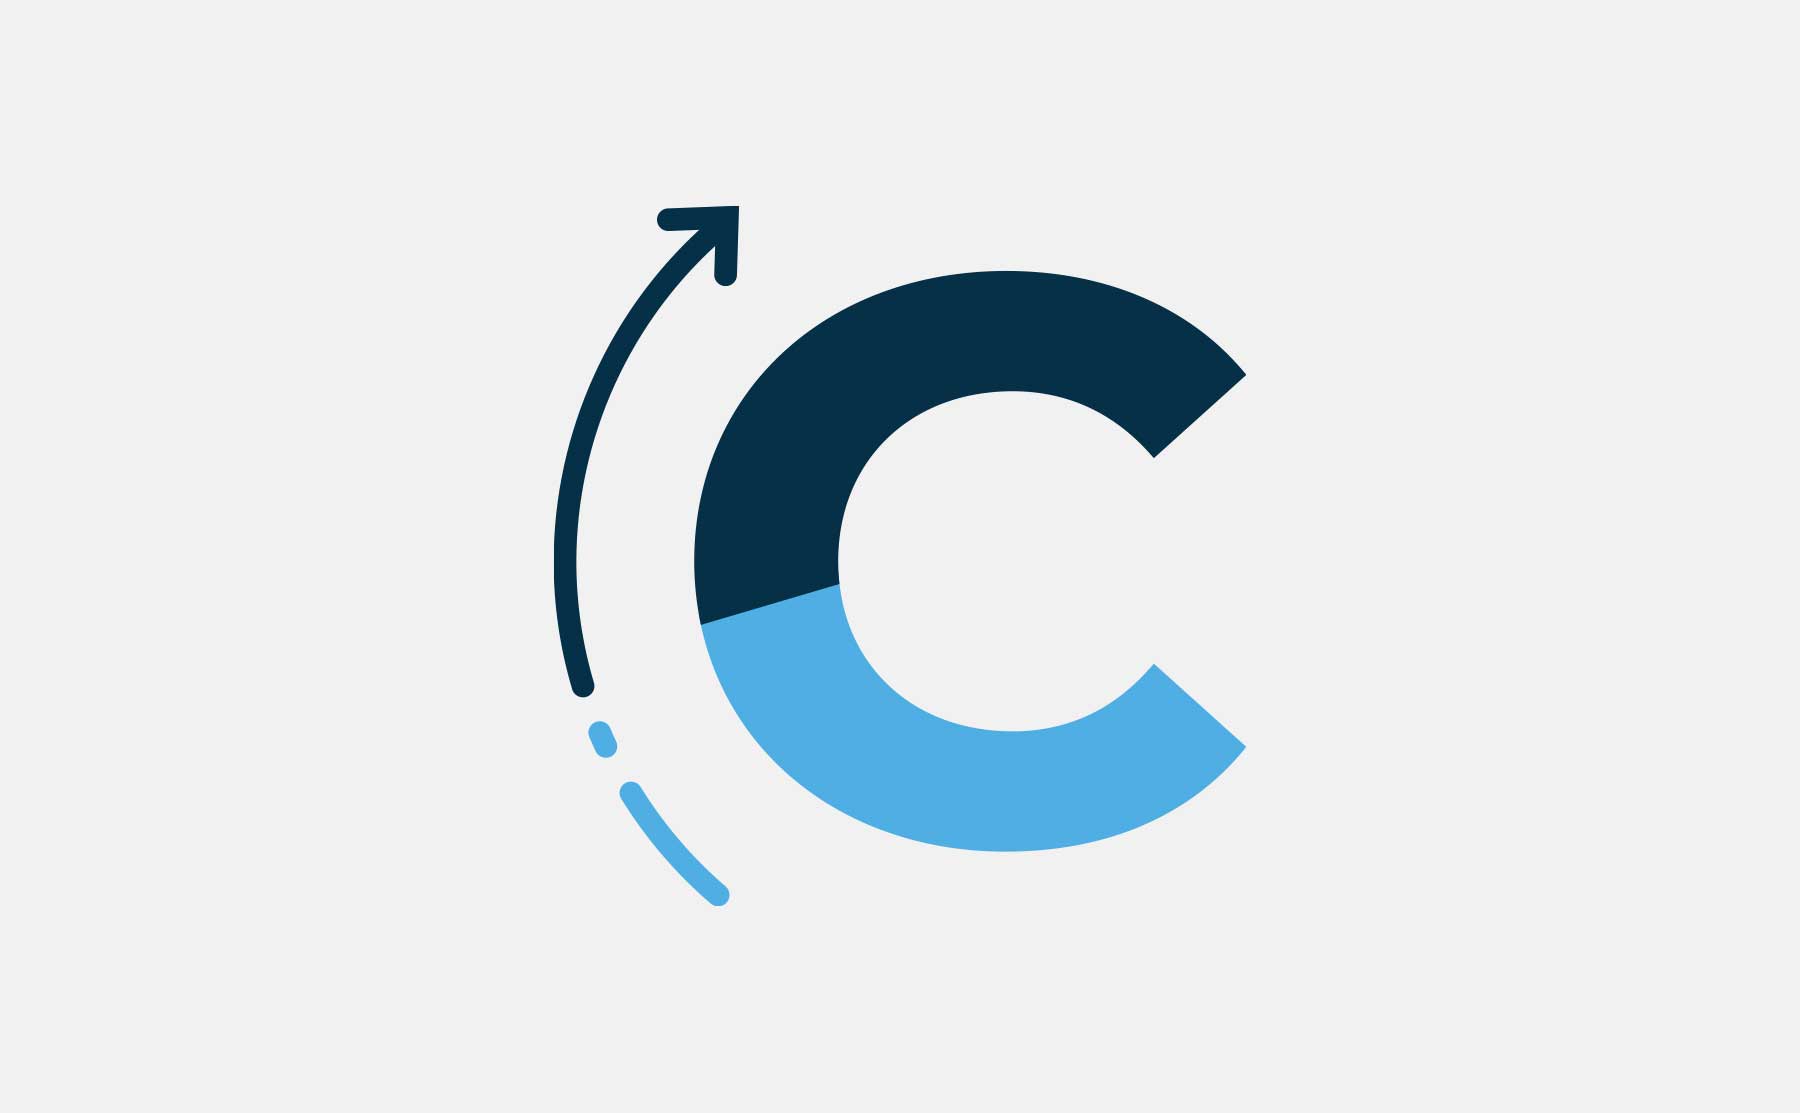 Le sigle du CRIC, ou le logo dans sa version simplifiée, imaginé par Westango